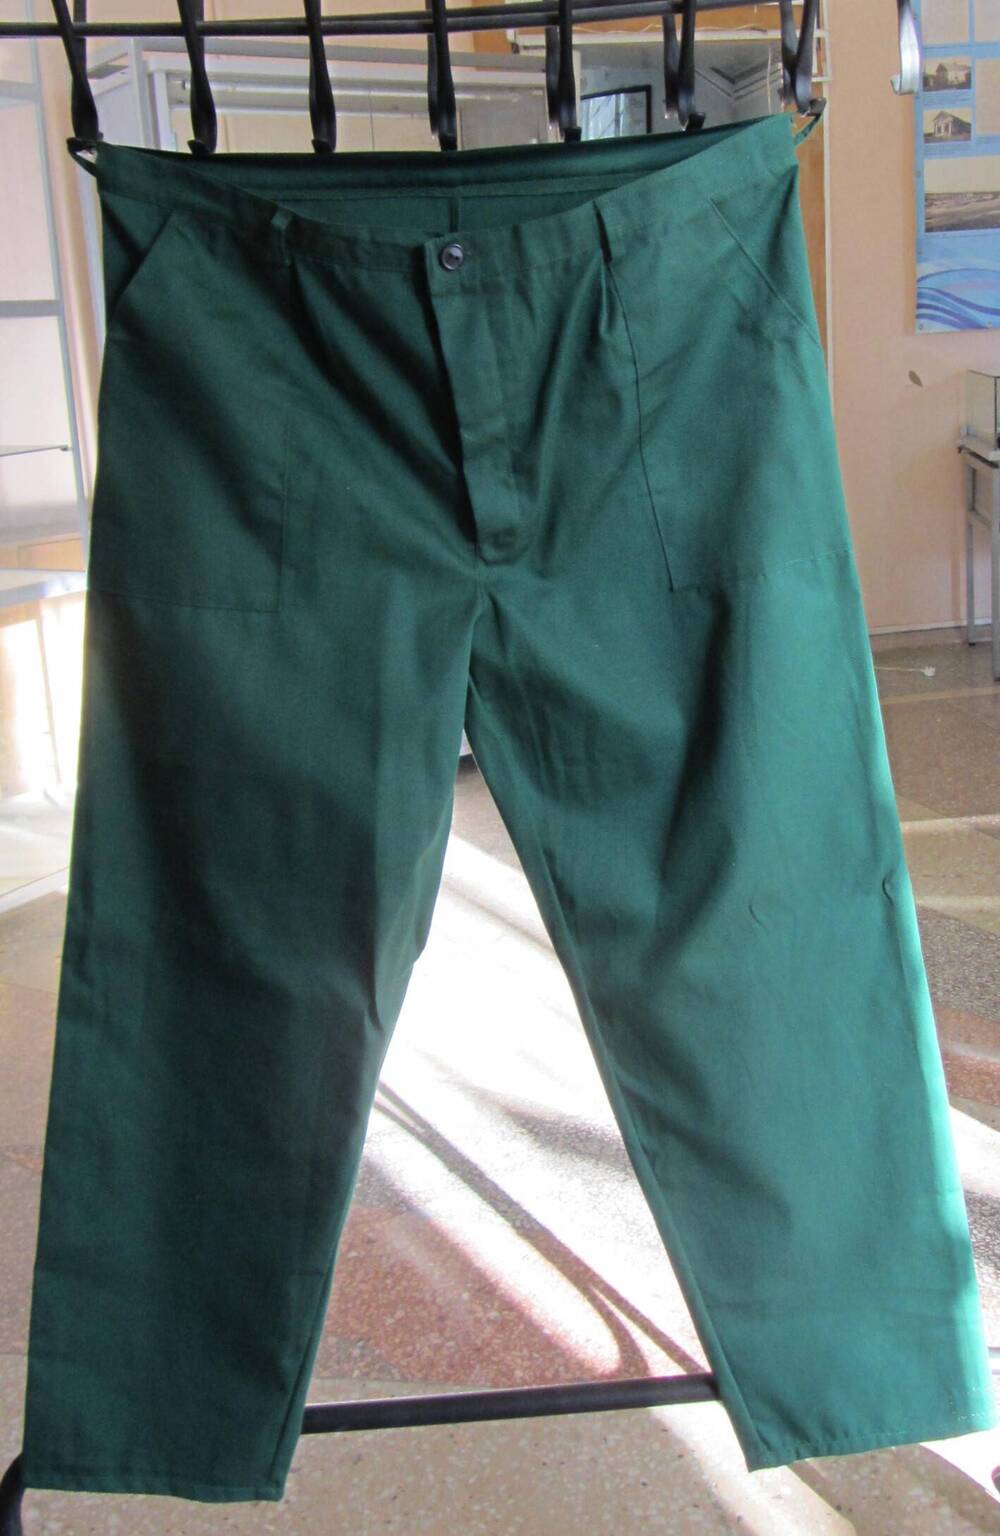 Брюки – деталь рабочего костюма ОАО «ВАТИ», с накладными карманами, с застёжкой на пуговицы, сшиты из ткани зелёного цвета.